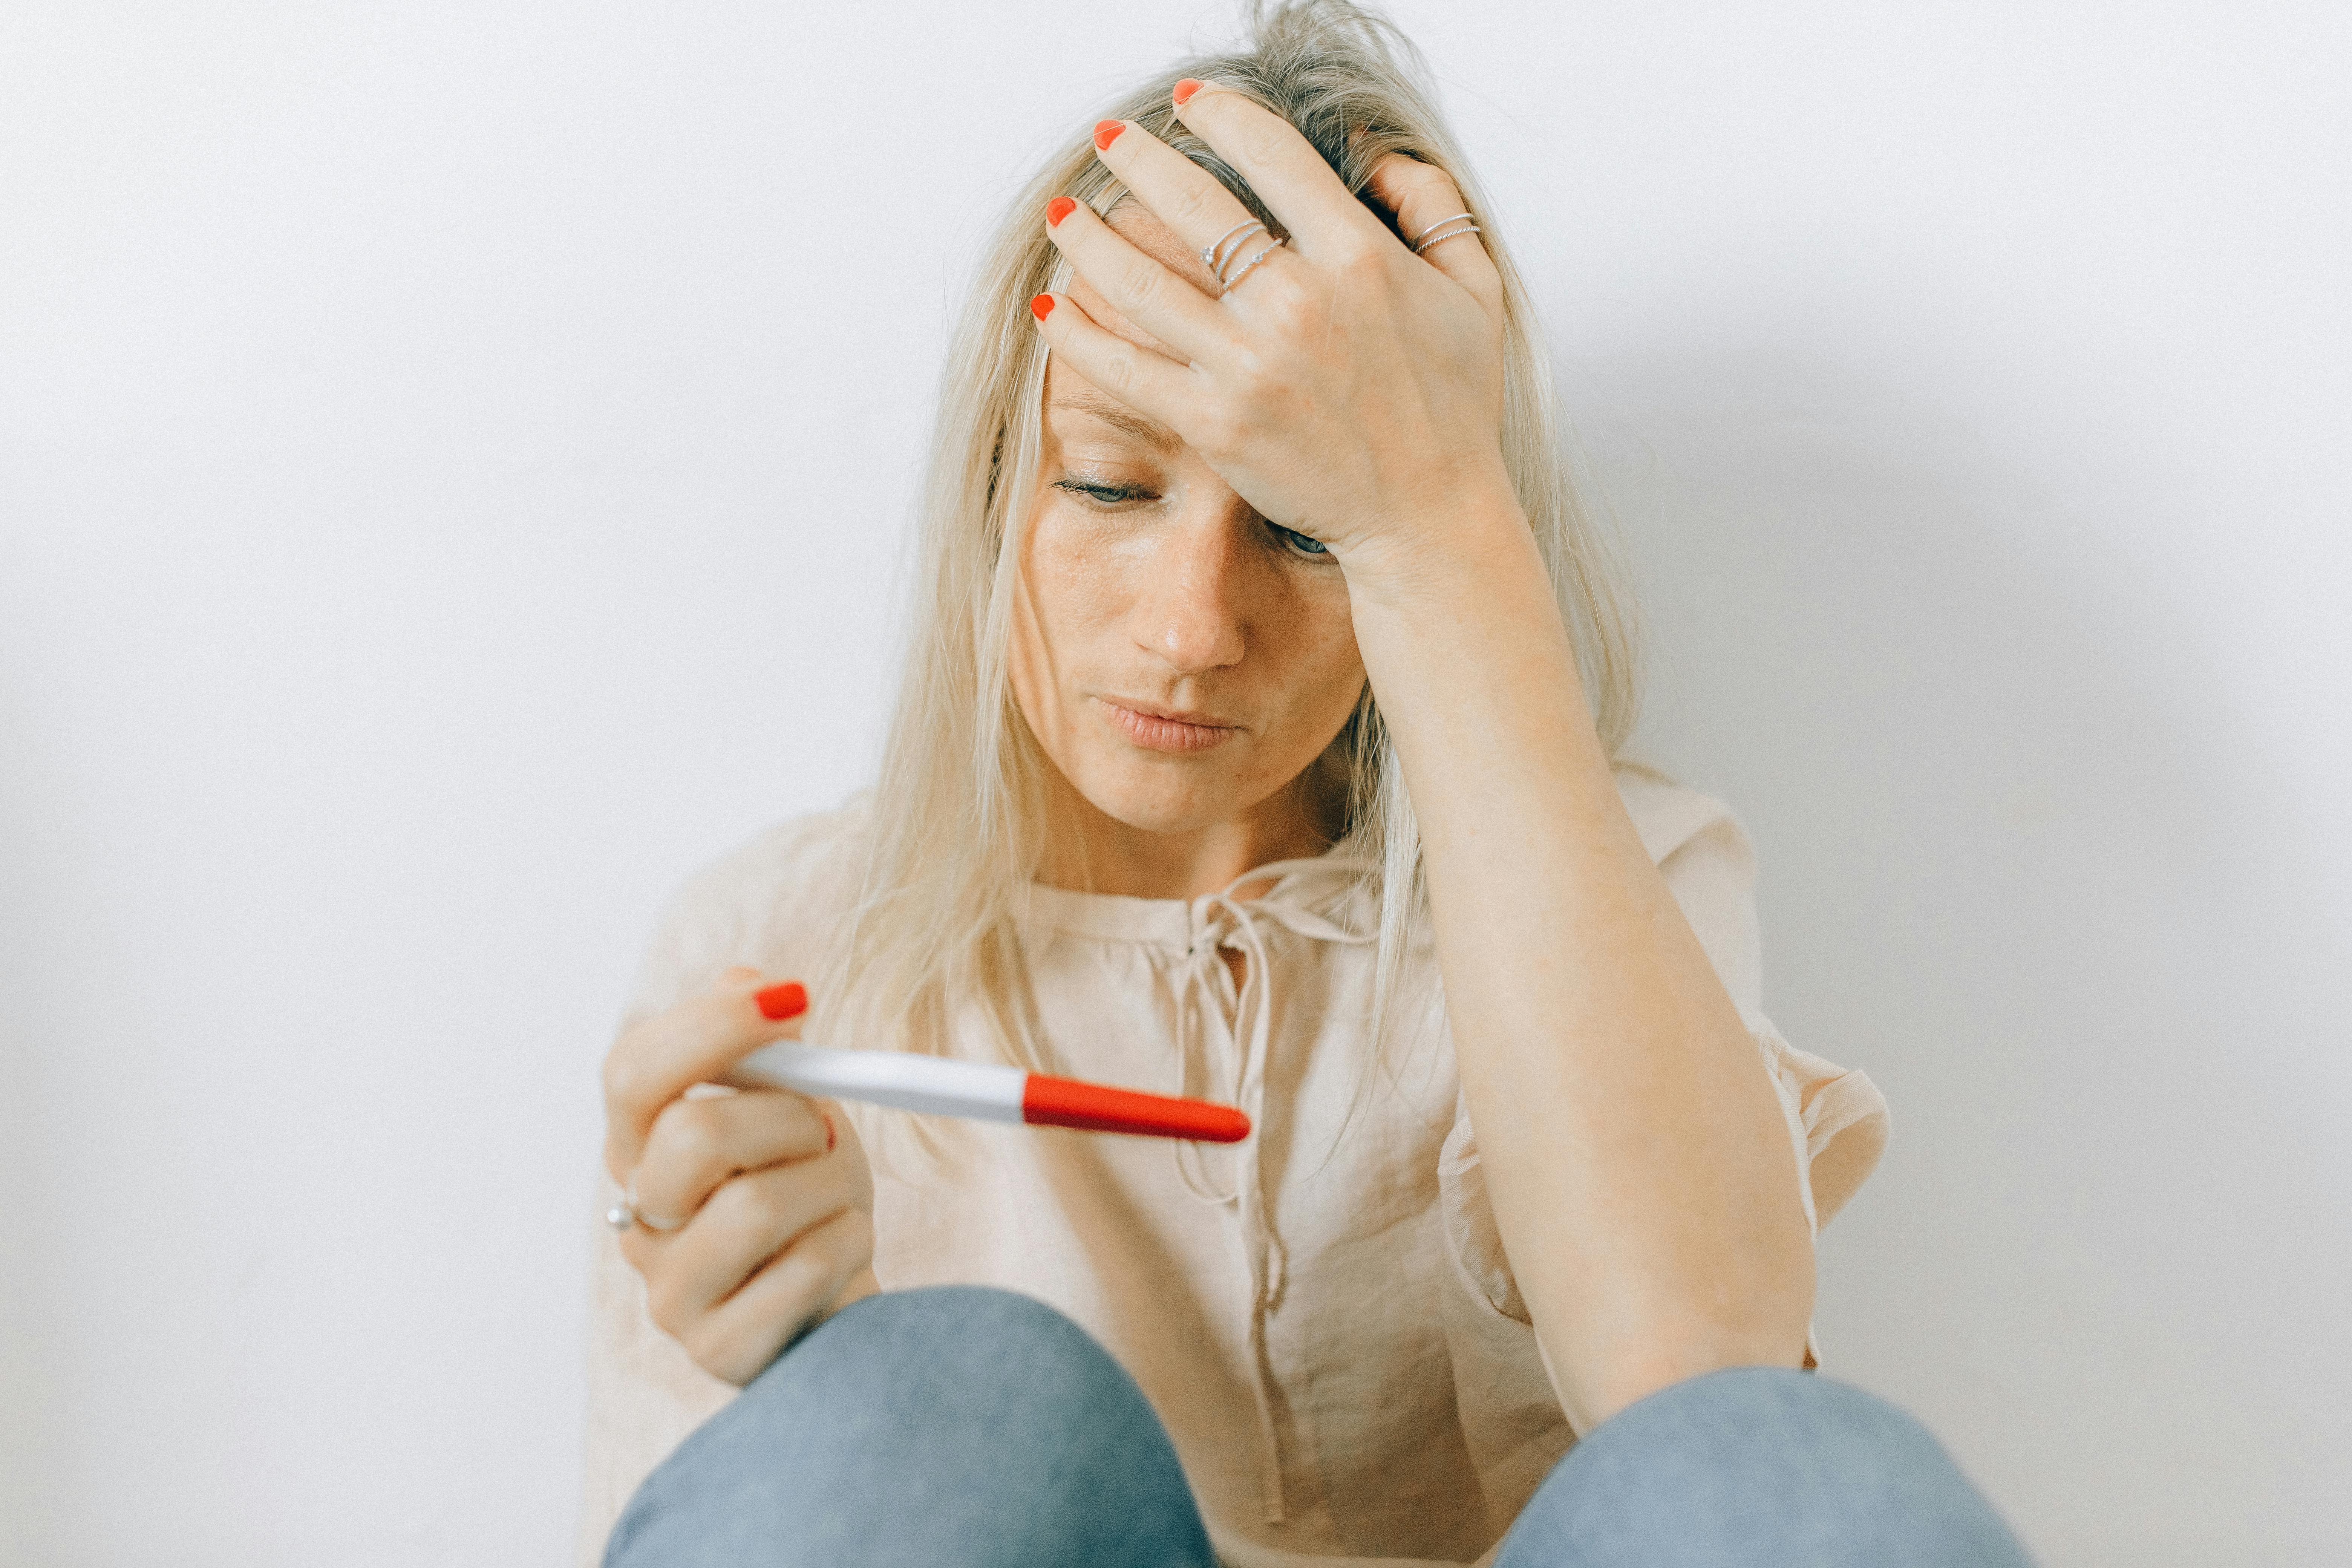 Awoman avec un test de grossesse | Source : Pexels